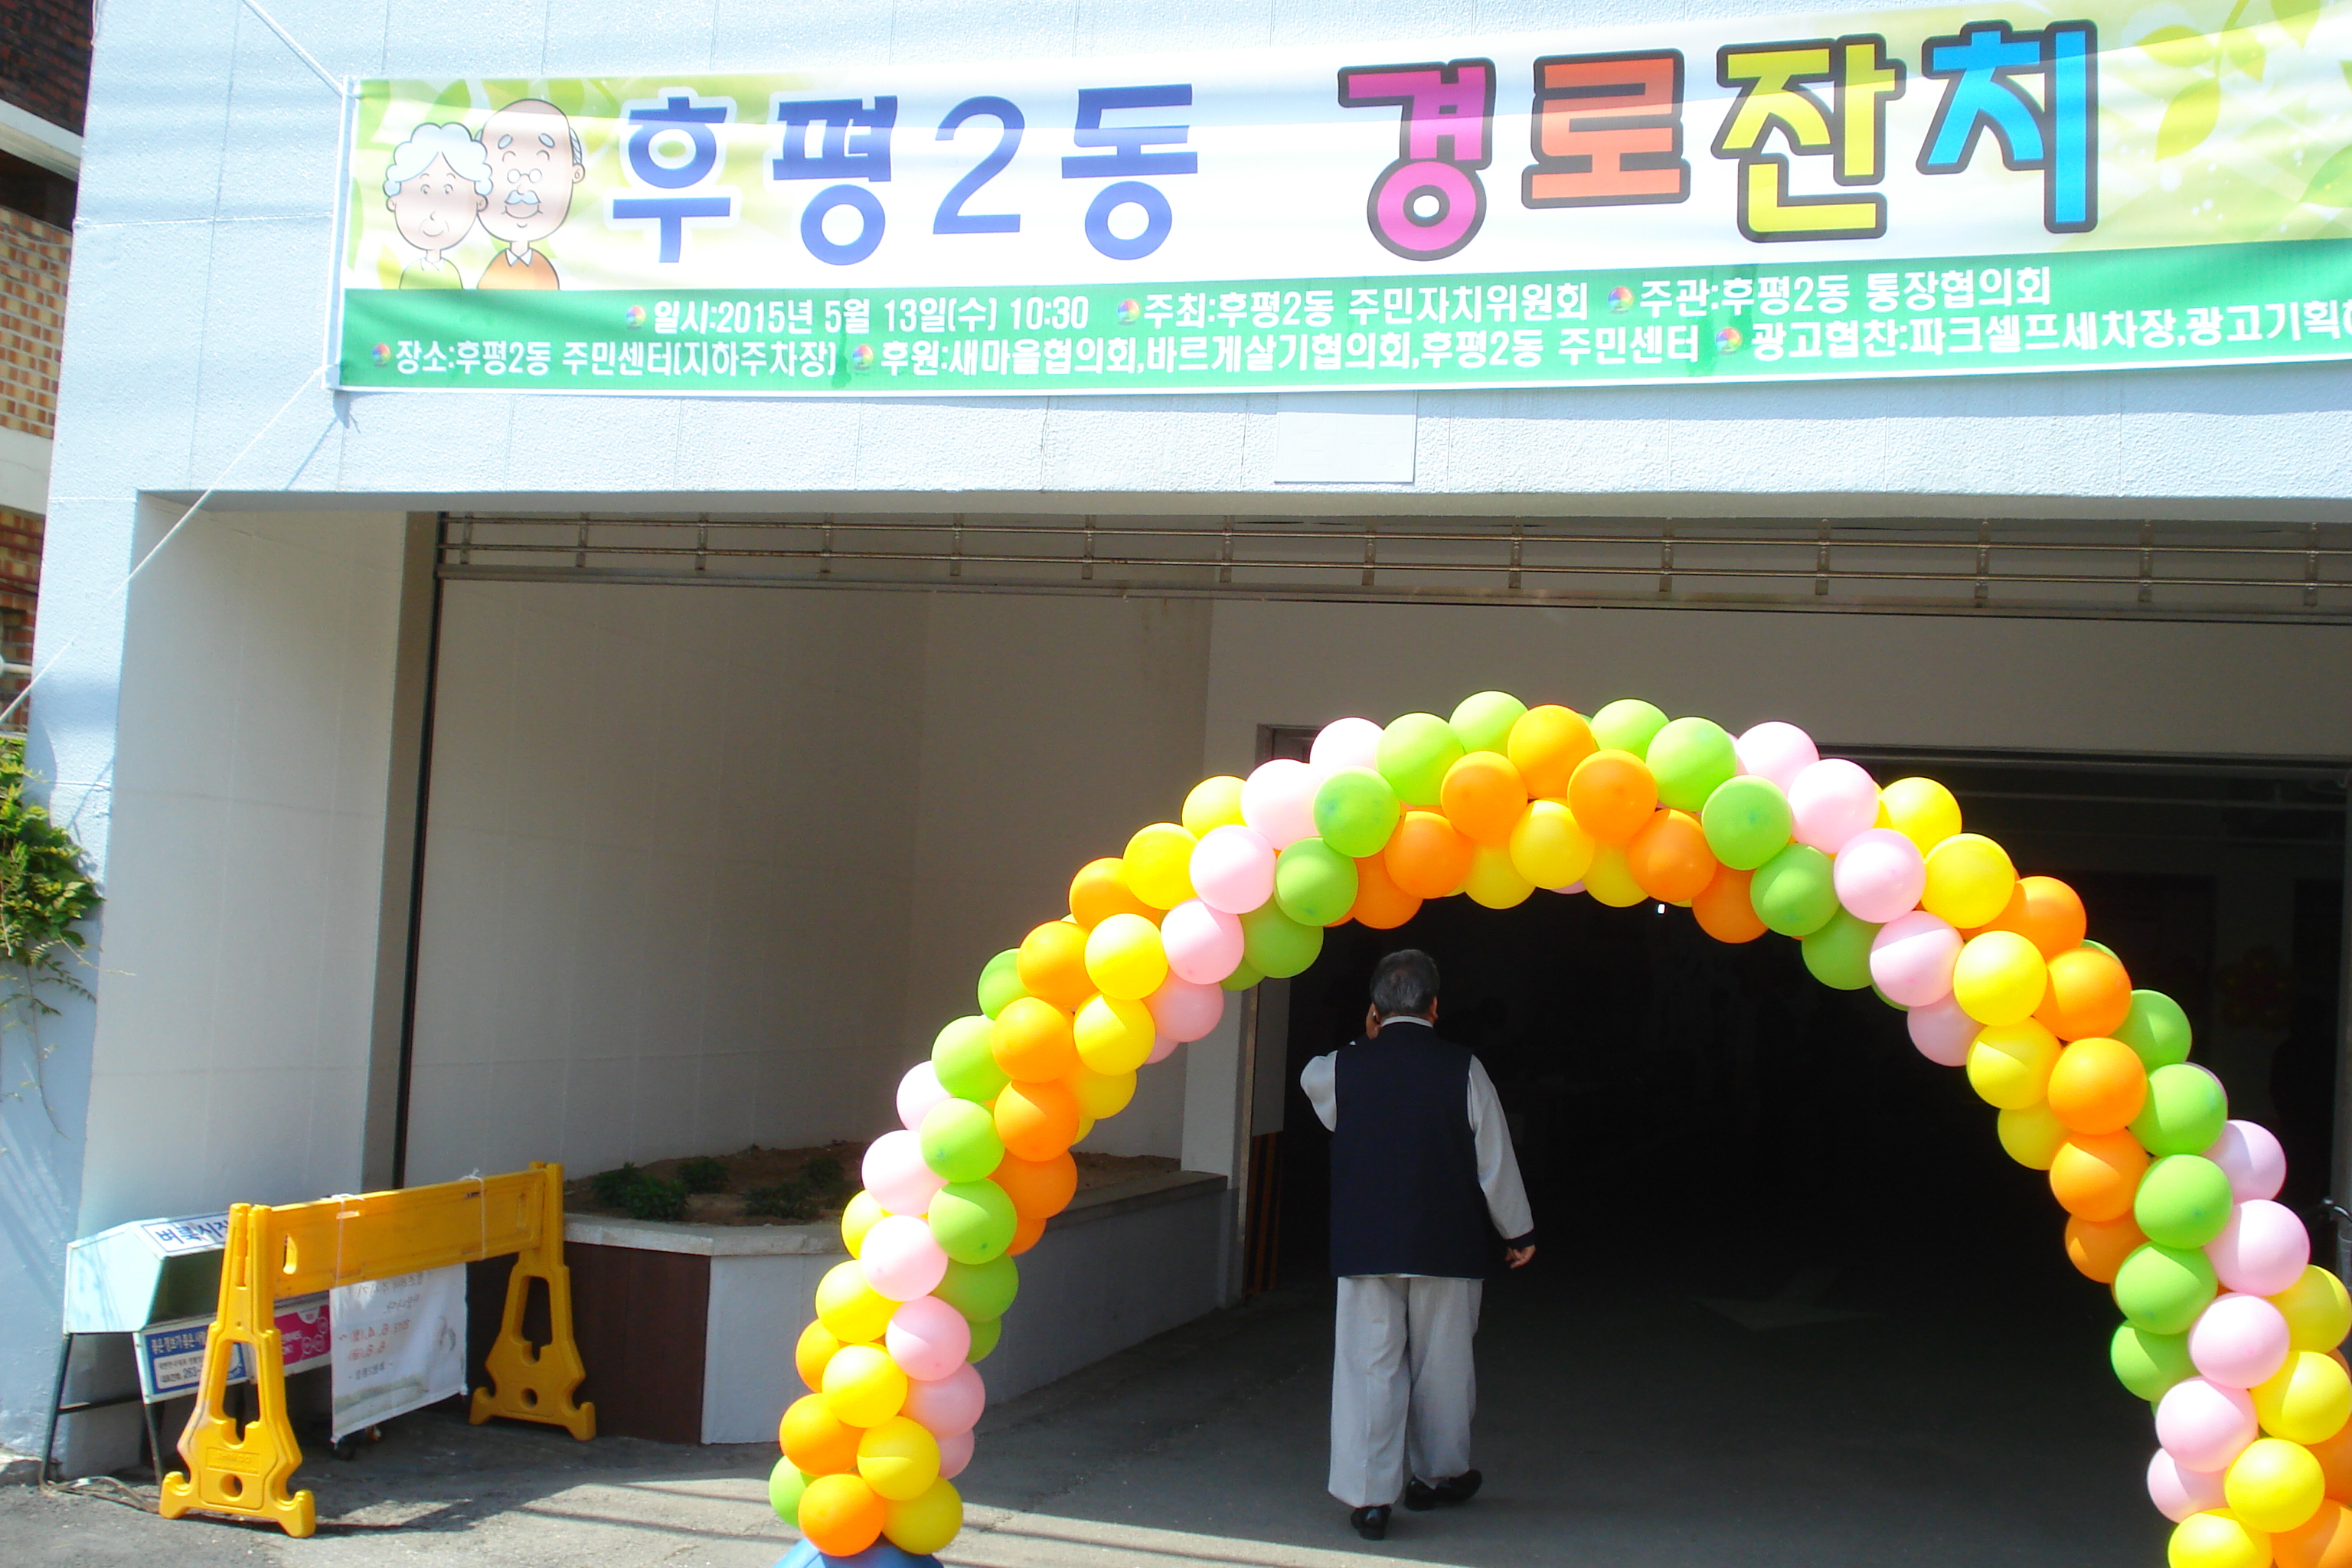 2015년 5월 13일 경로잔치 개최